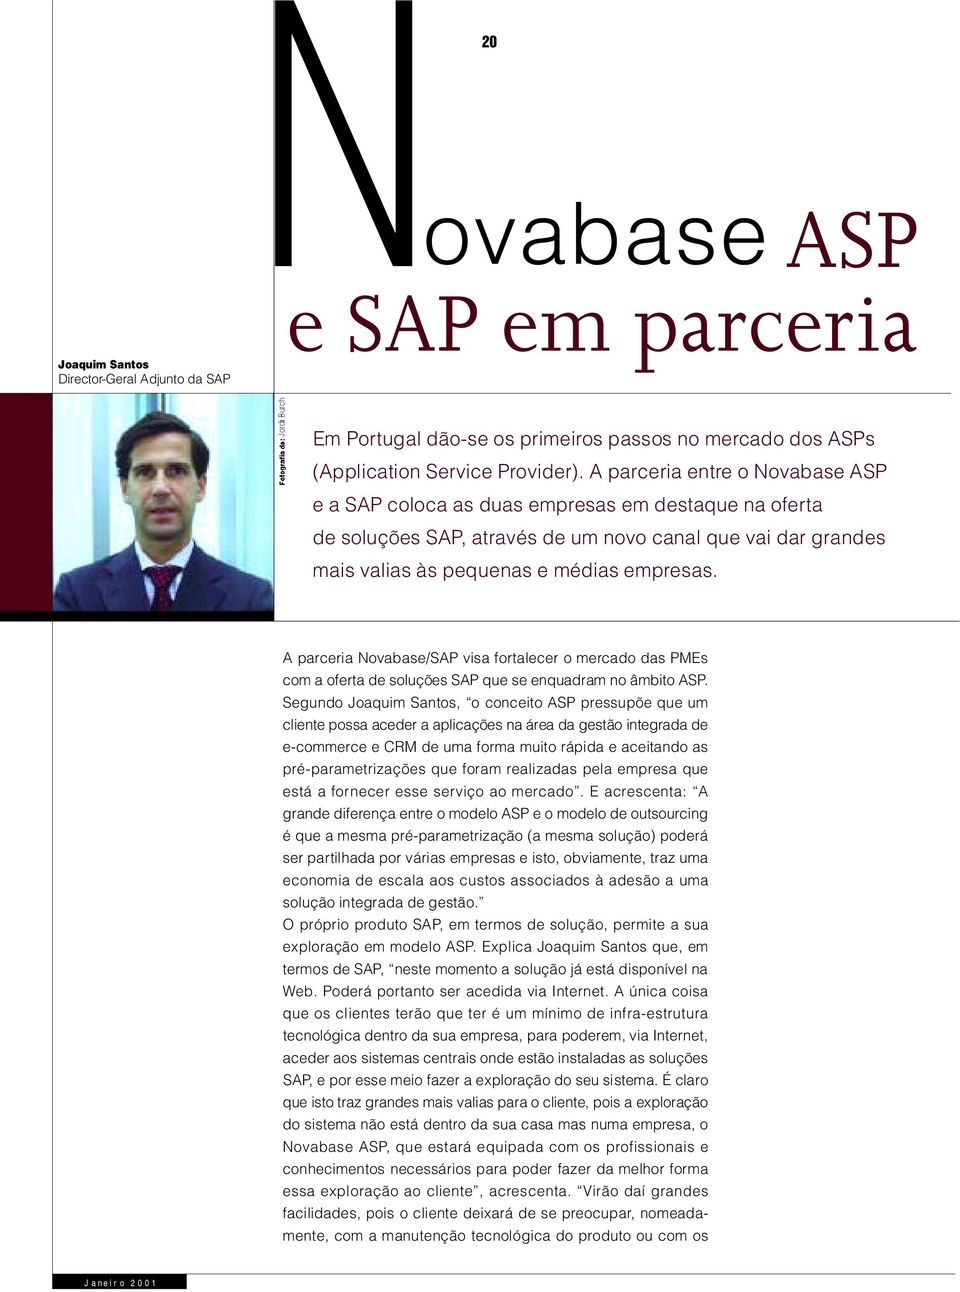 A parceria Novabase/SAP visa fortalecer o mercado das PMEs com a oferta de soluções SAP que se enquadram no âmbito ASP.